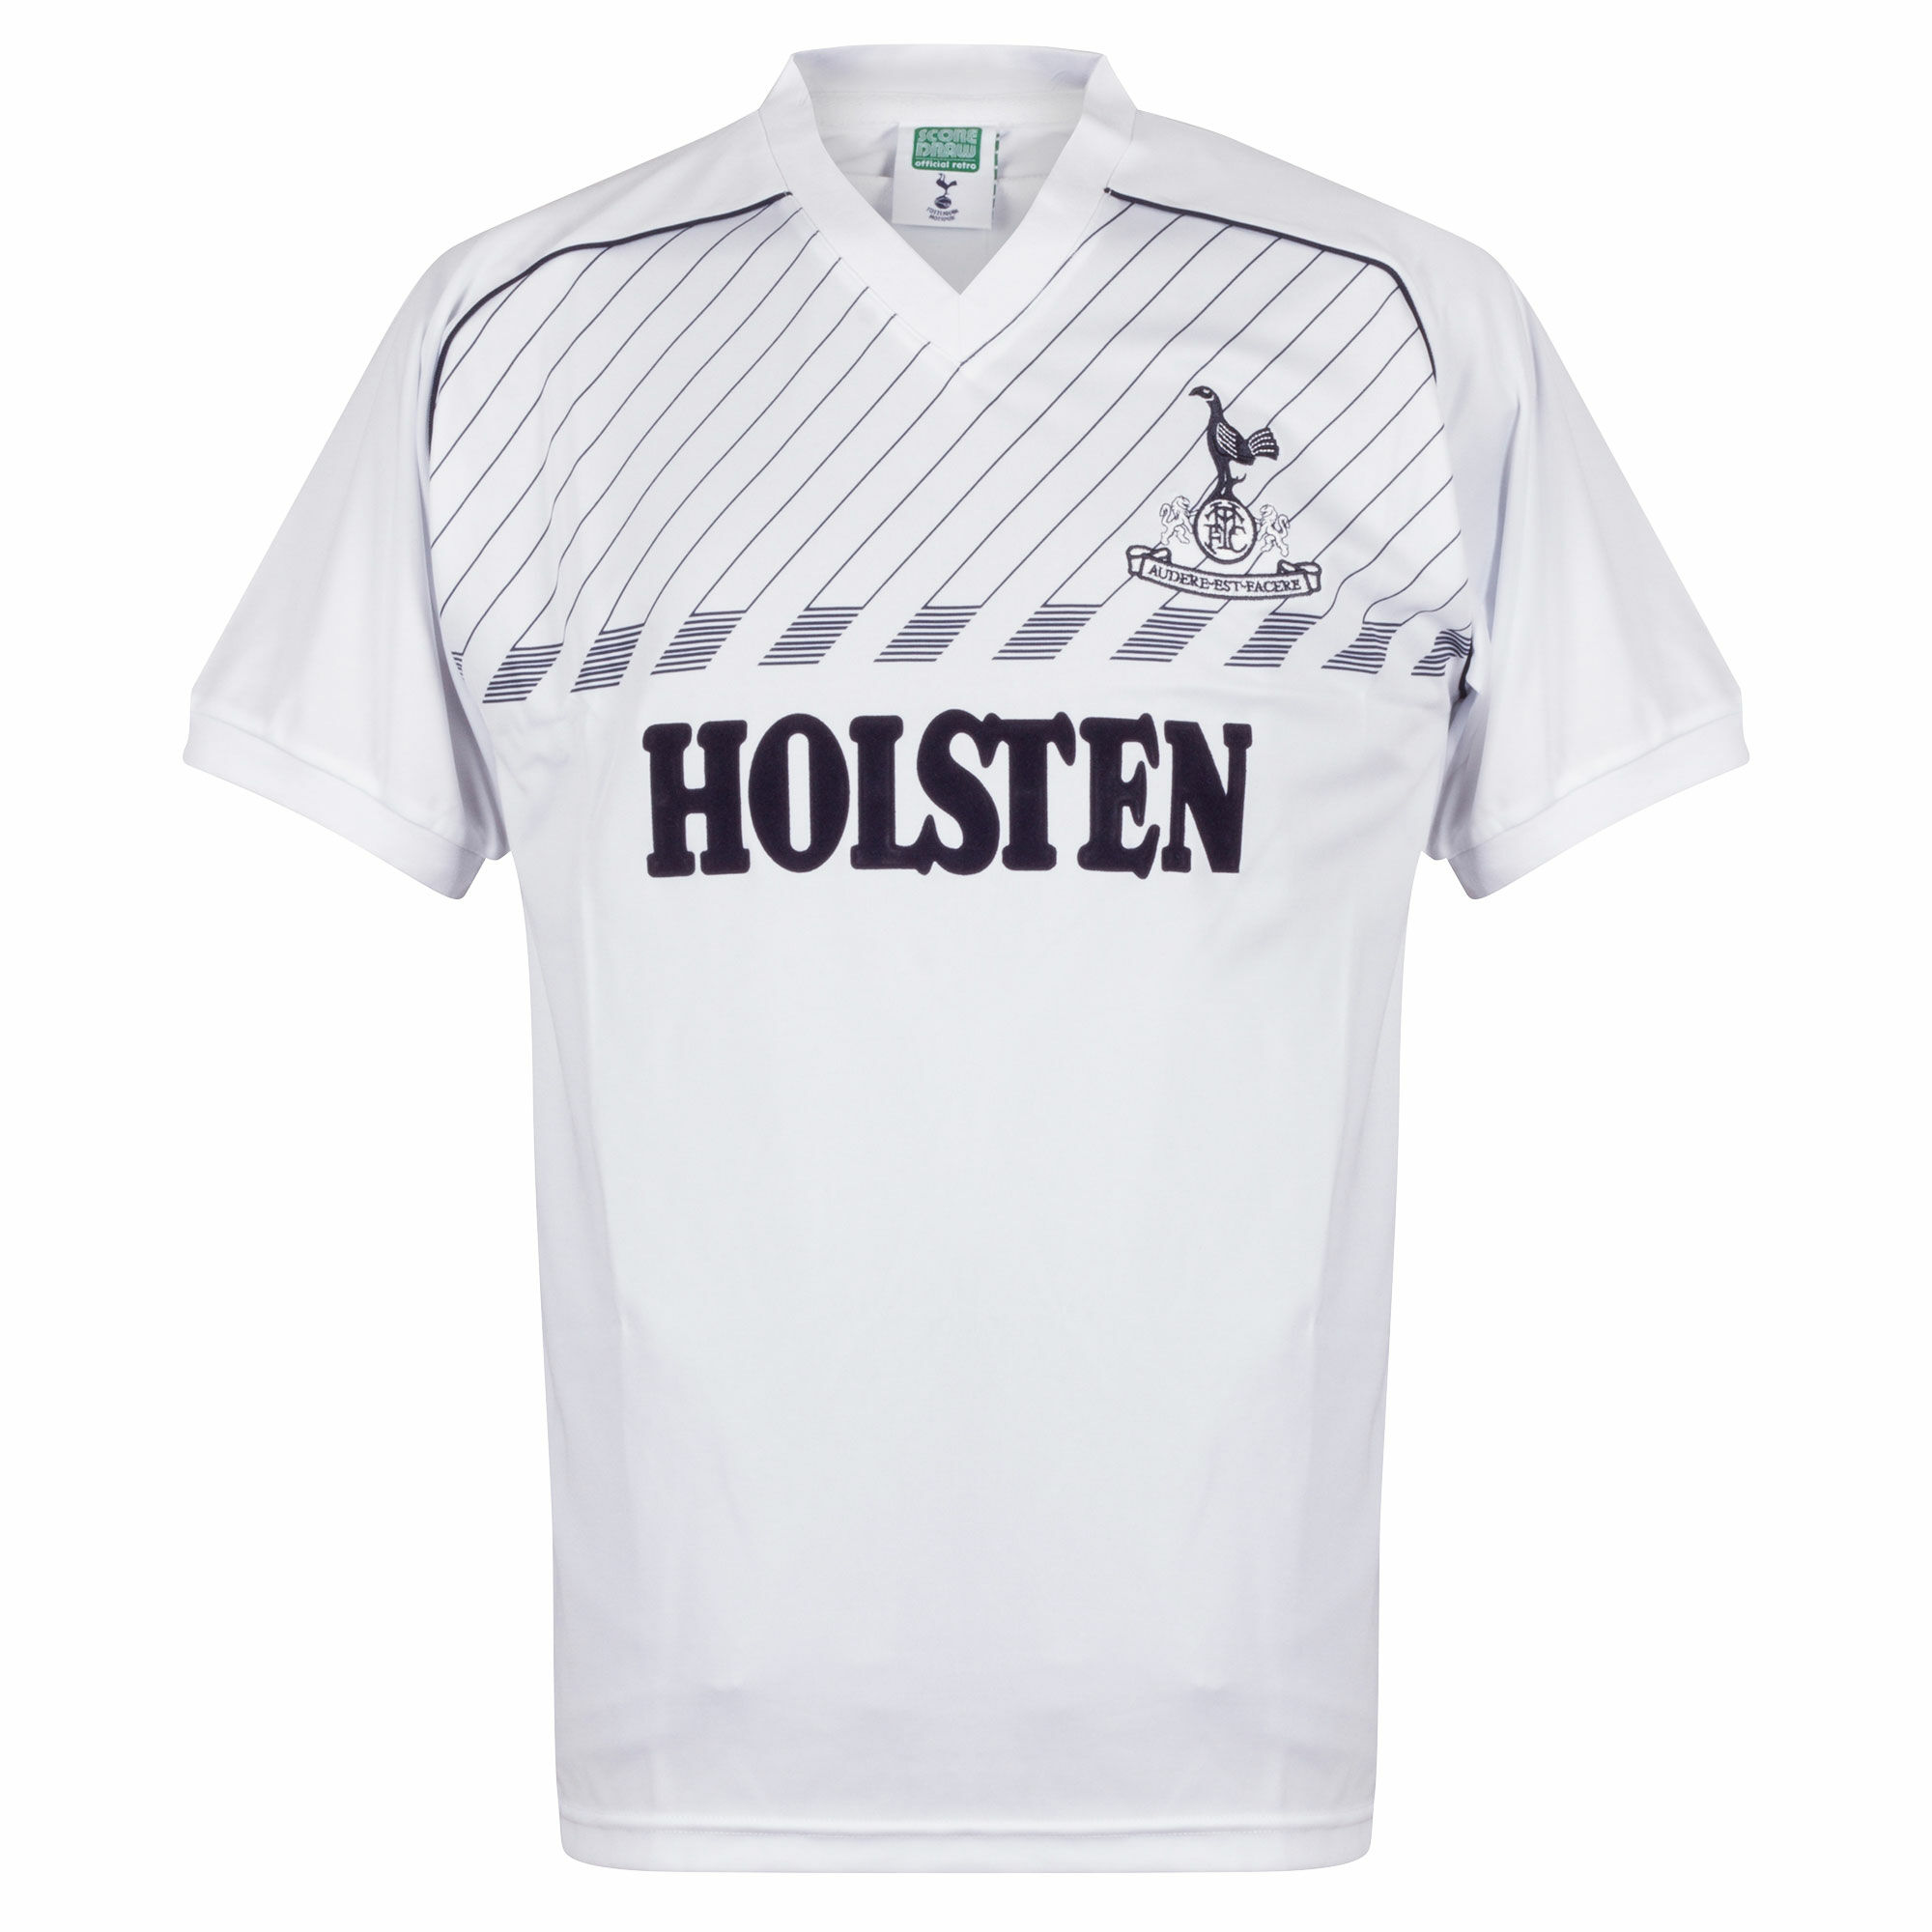 Tottenham Hotspur - Dres fotbalový - bílý, retrostyl, sezóna 1985/86, domácí